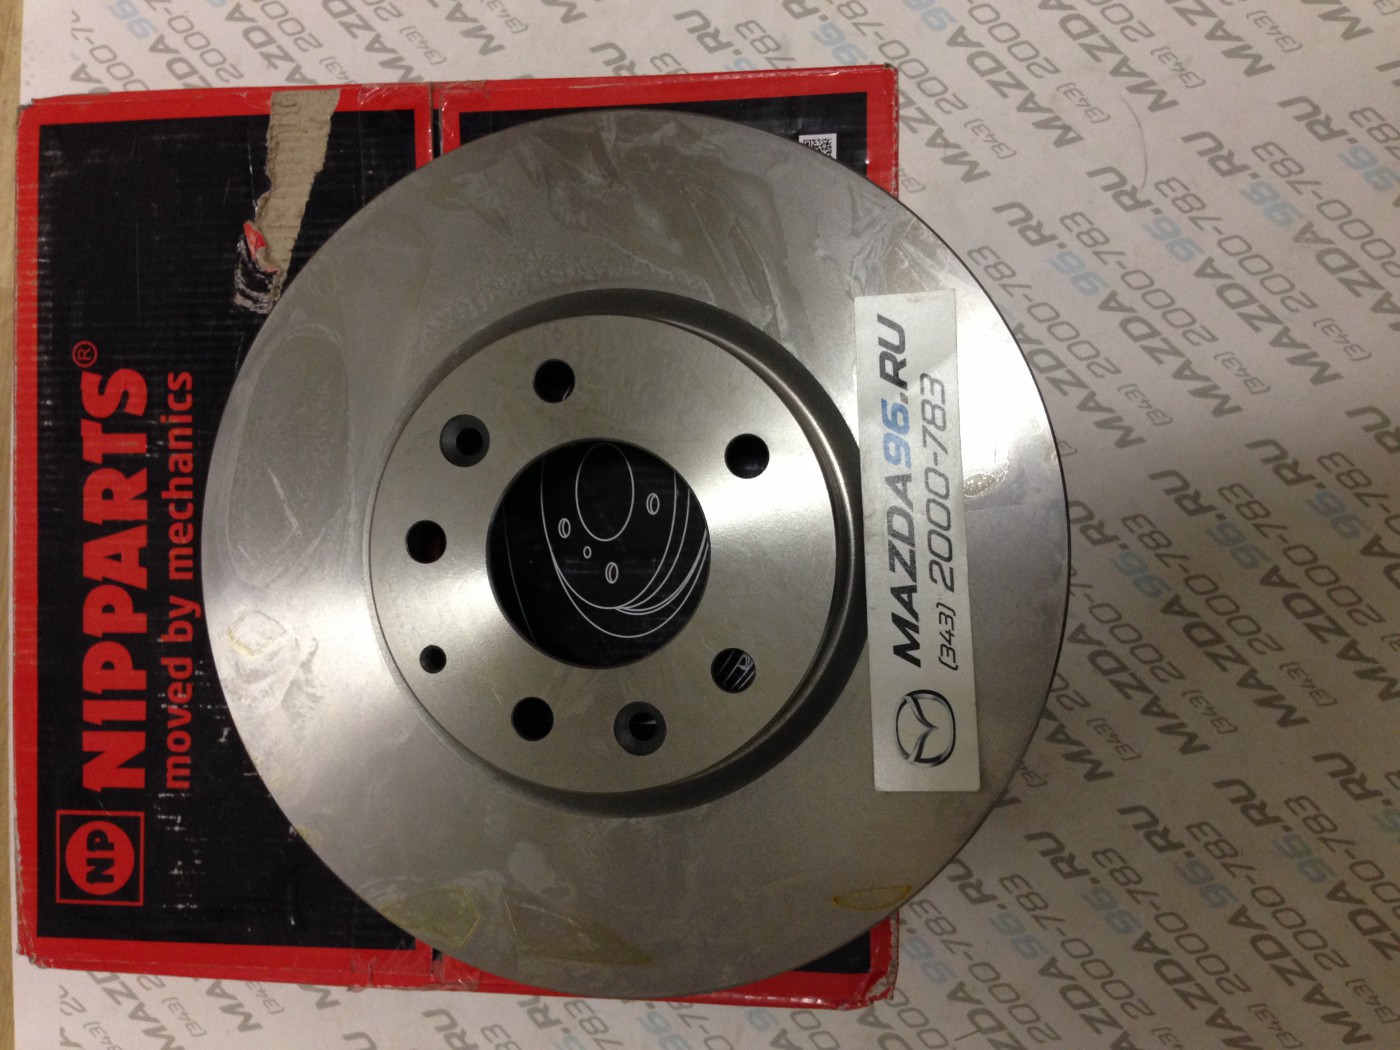 Диски тормозные передние мазда 6 gh. Тормозные диски Мазда 6 GH. Задние тормозные диски 300мм Мазда 3 2.0. Мазда 6 gg 2.0 диск передний. Mazda 6 gg тормозные диски.